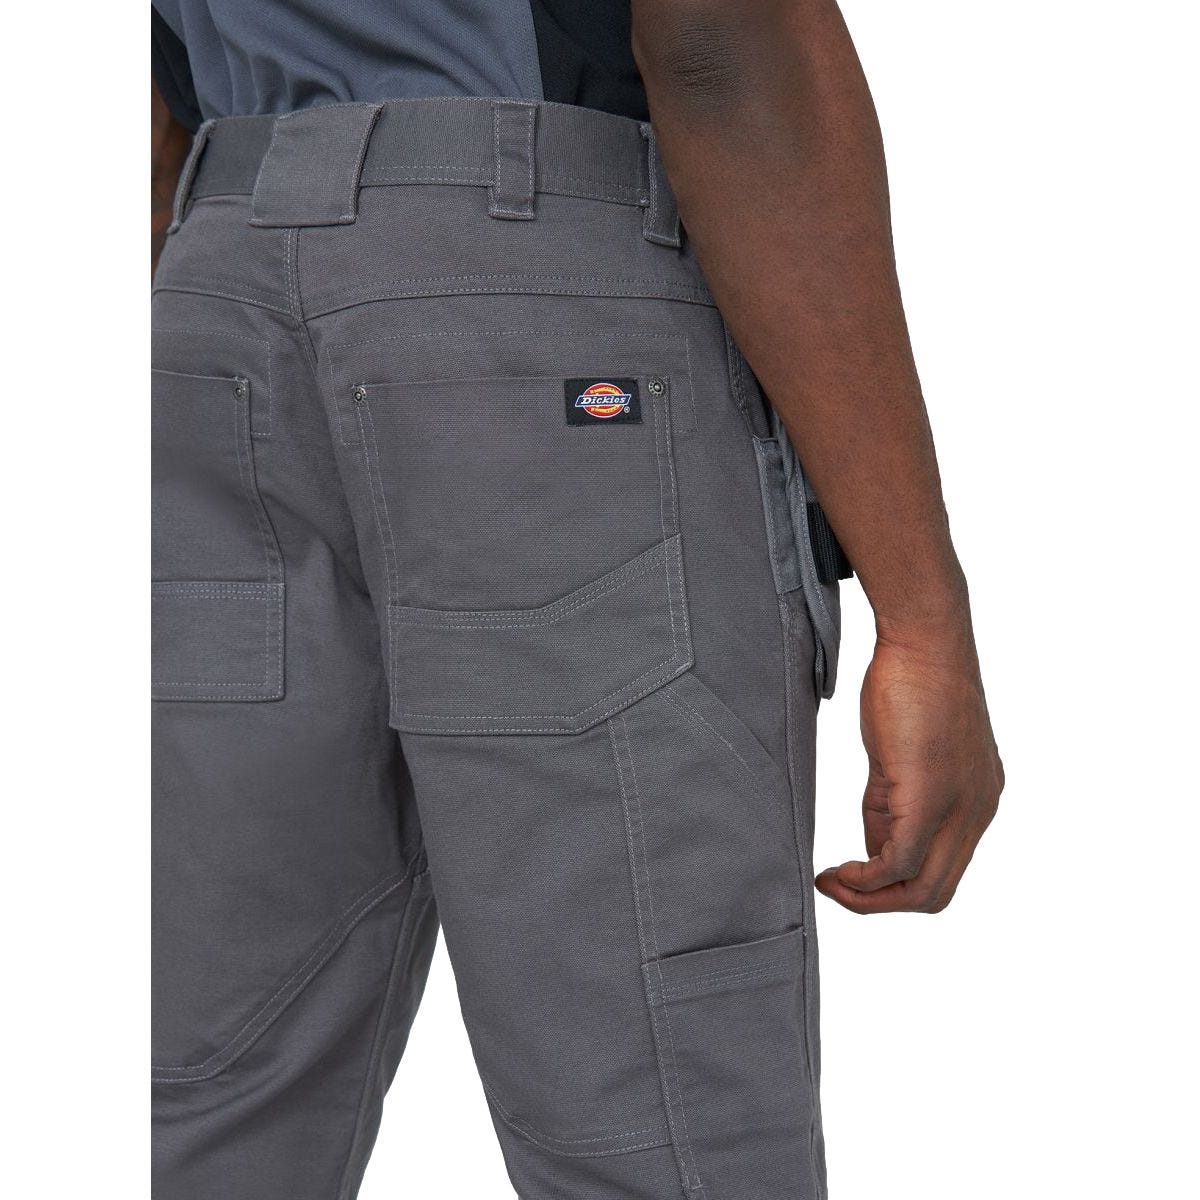 Pantalon Universal Flex Gris et noir - Dickies - Taille 50 2